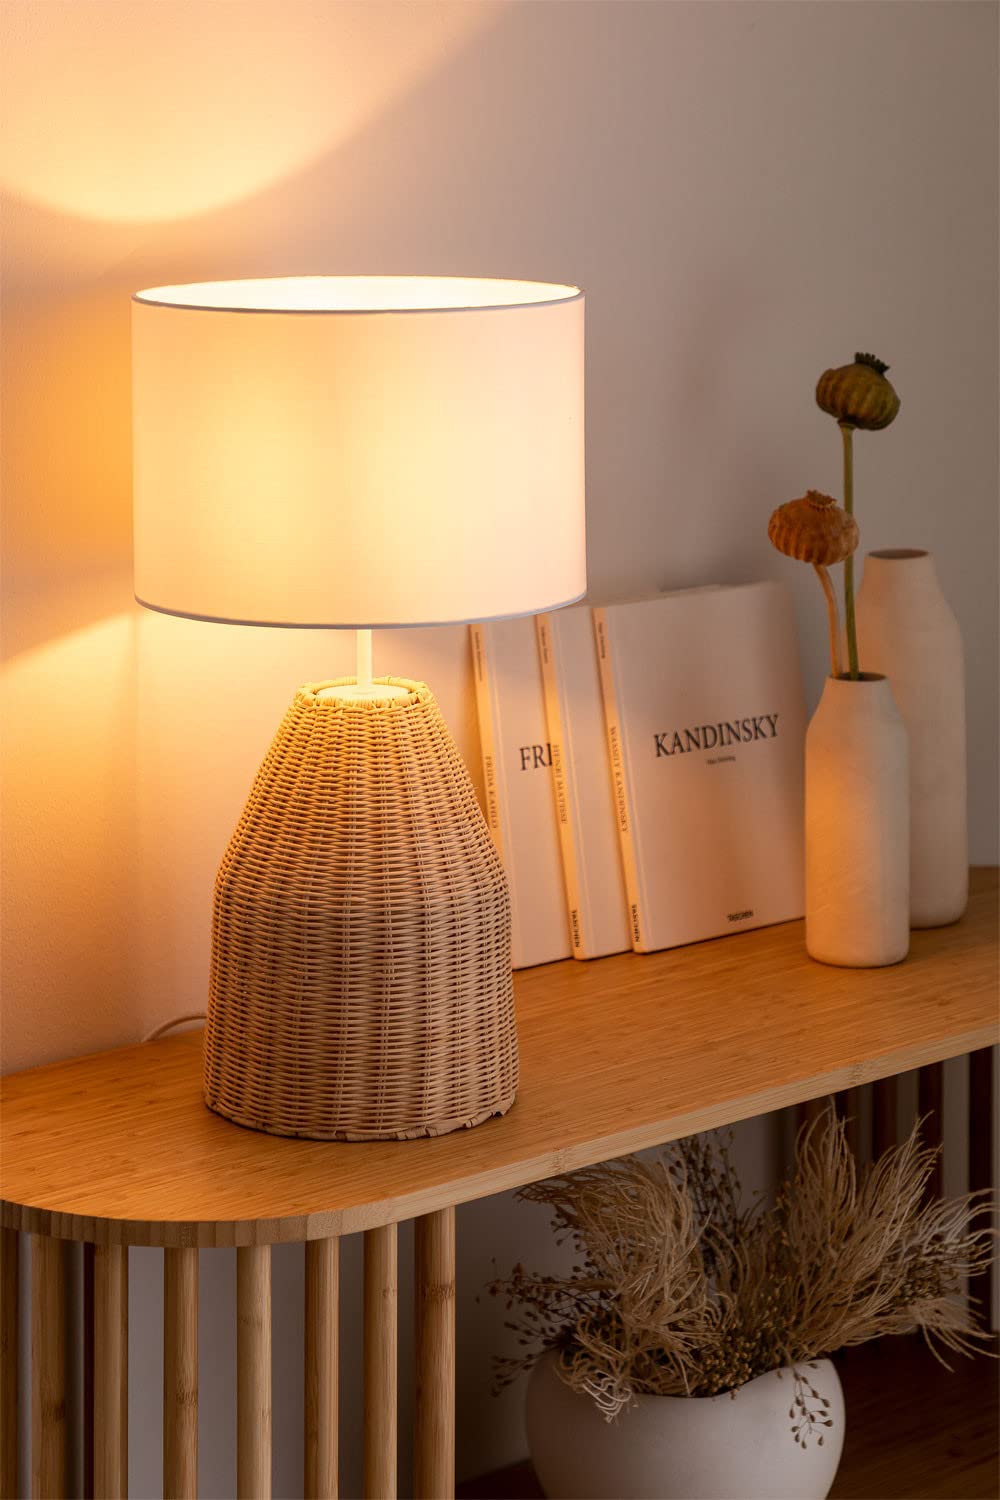 AKWAY Handmade Wicker Table Lamp, Beside Table Lamps, Study Table Lamps, Side Lamps Light Decoration for Home, Living Room, Bedroom Bedside, Hall | (12" x7") - Akway